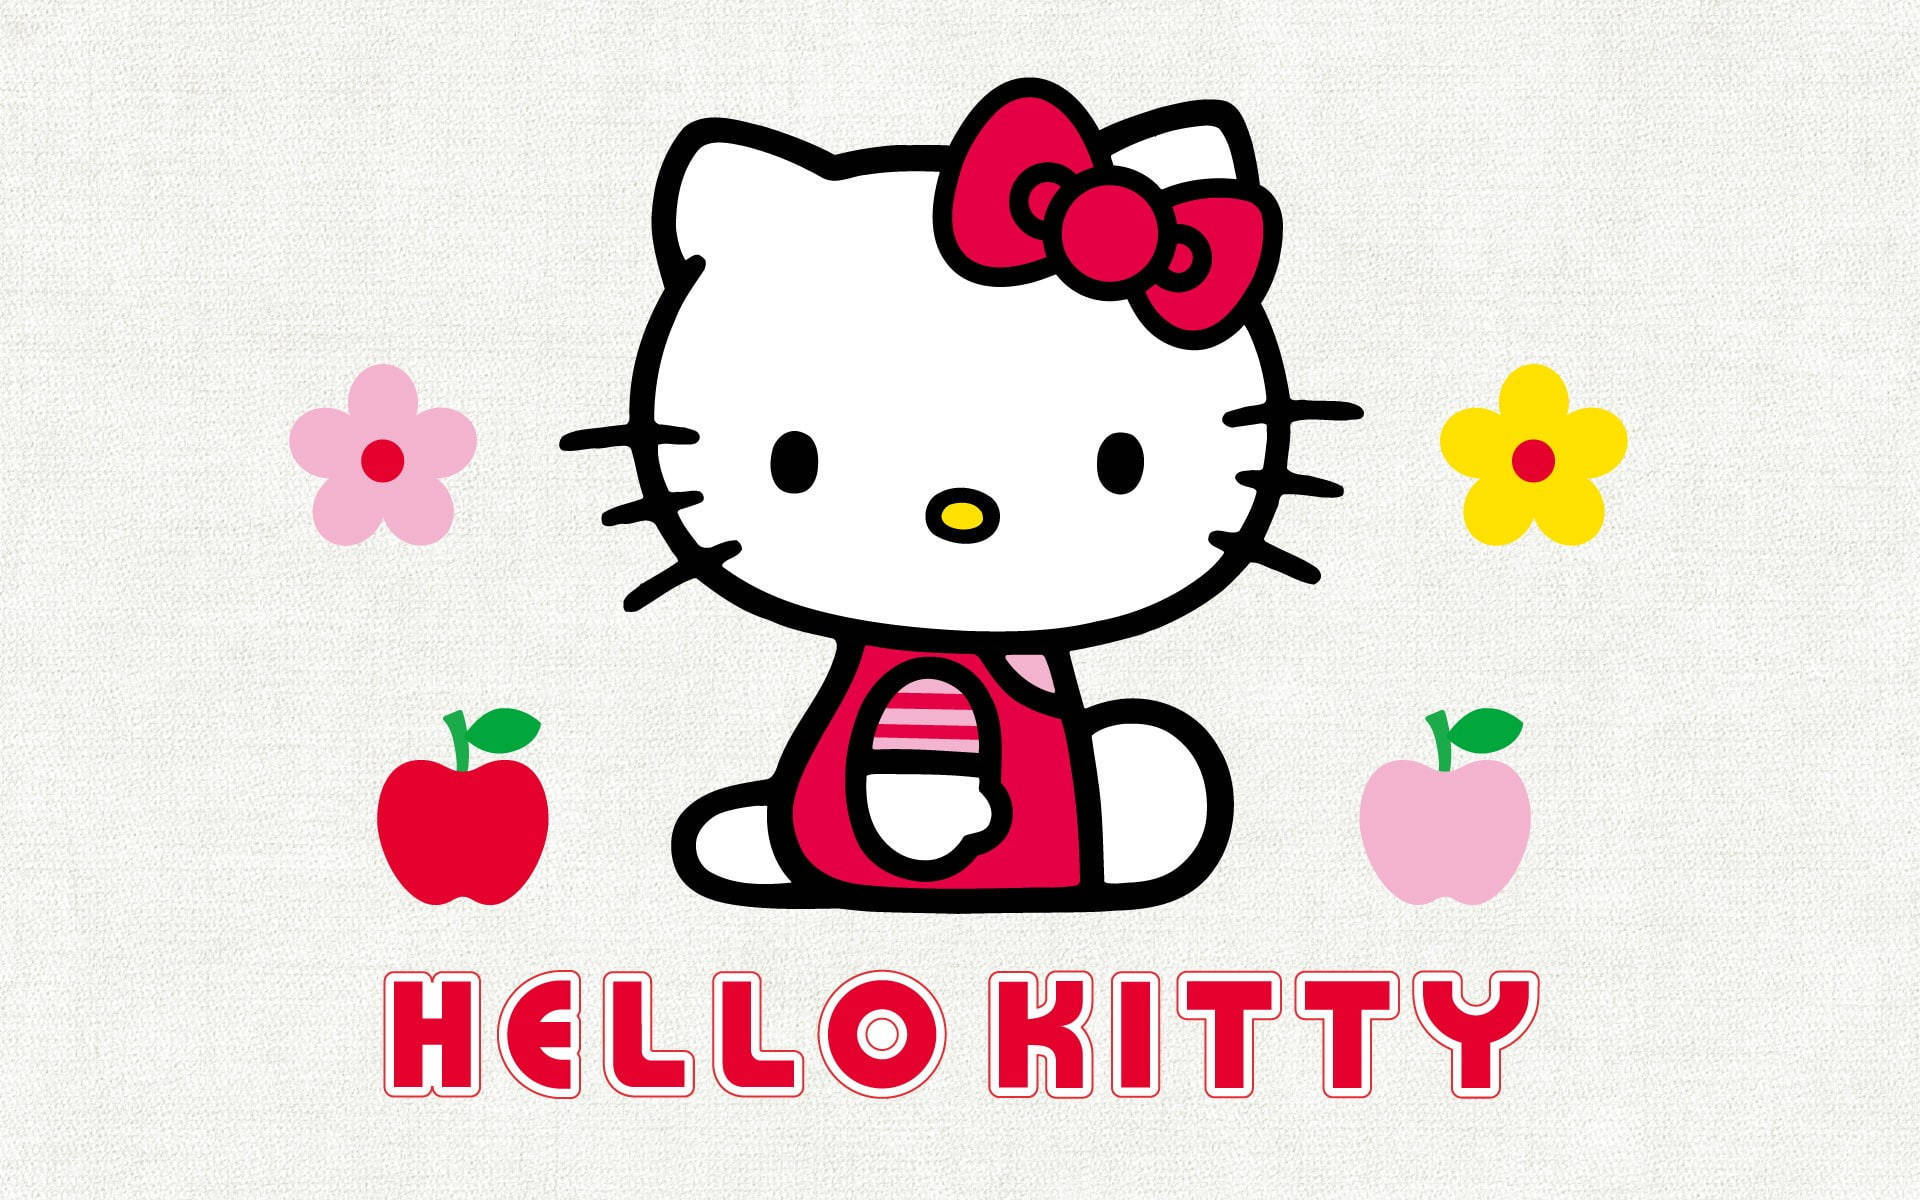 Sanriofundo De Tela Hello Kitty Dividido. Papel de Parede